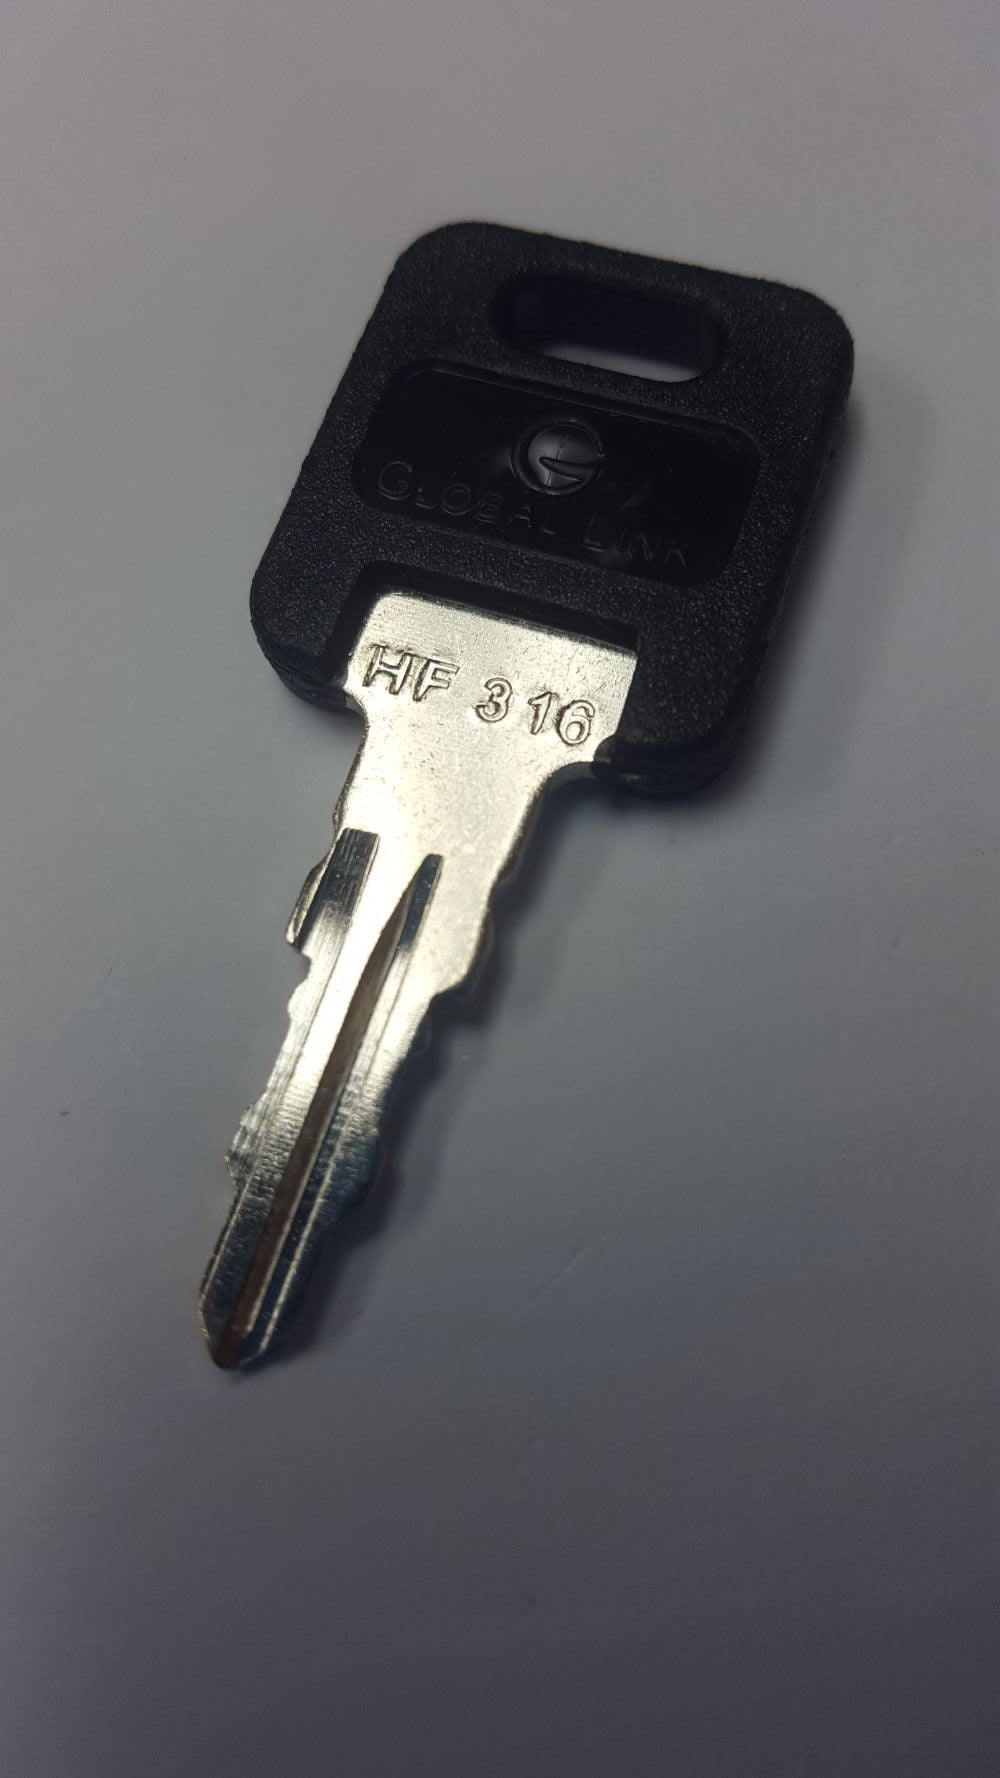 CPG KEY-HF-316 Pre-cut Stamped FIC Replacemnt HF316 Key